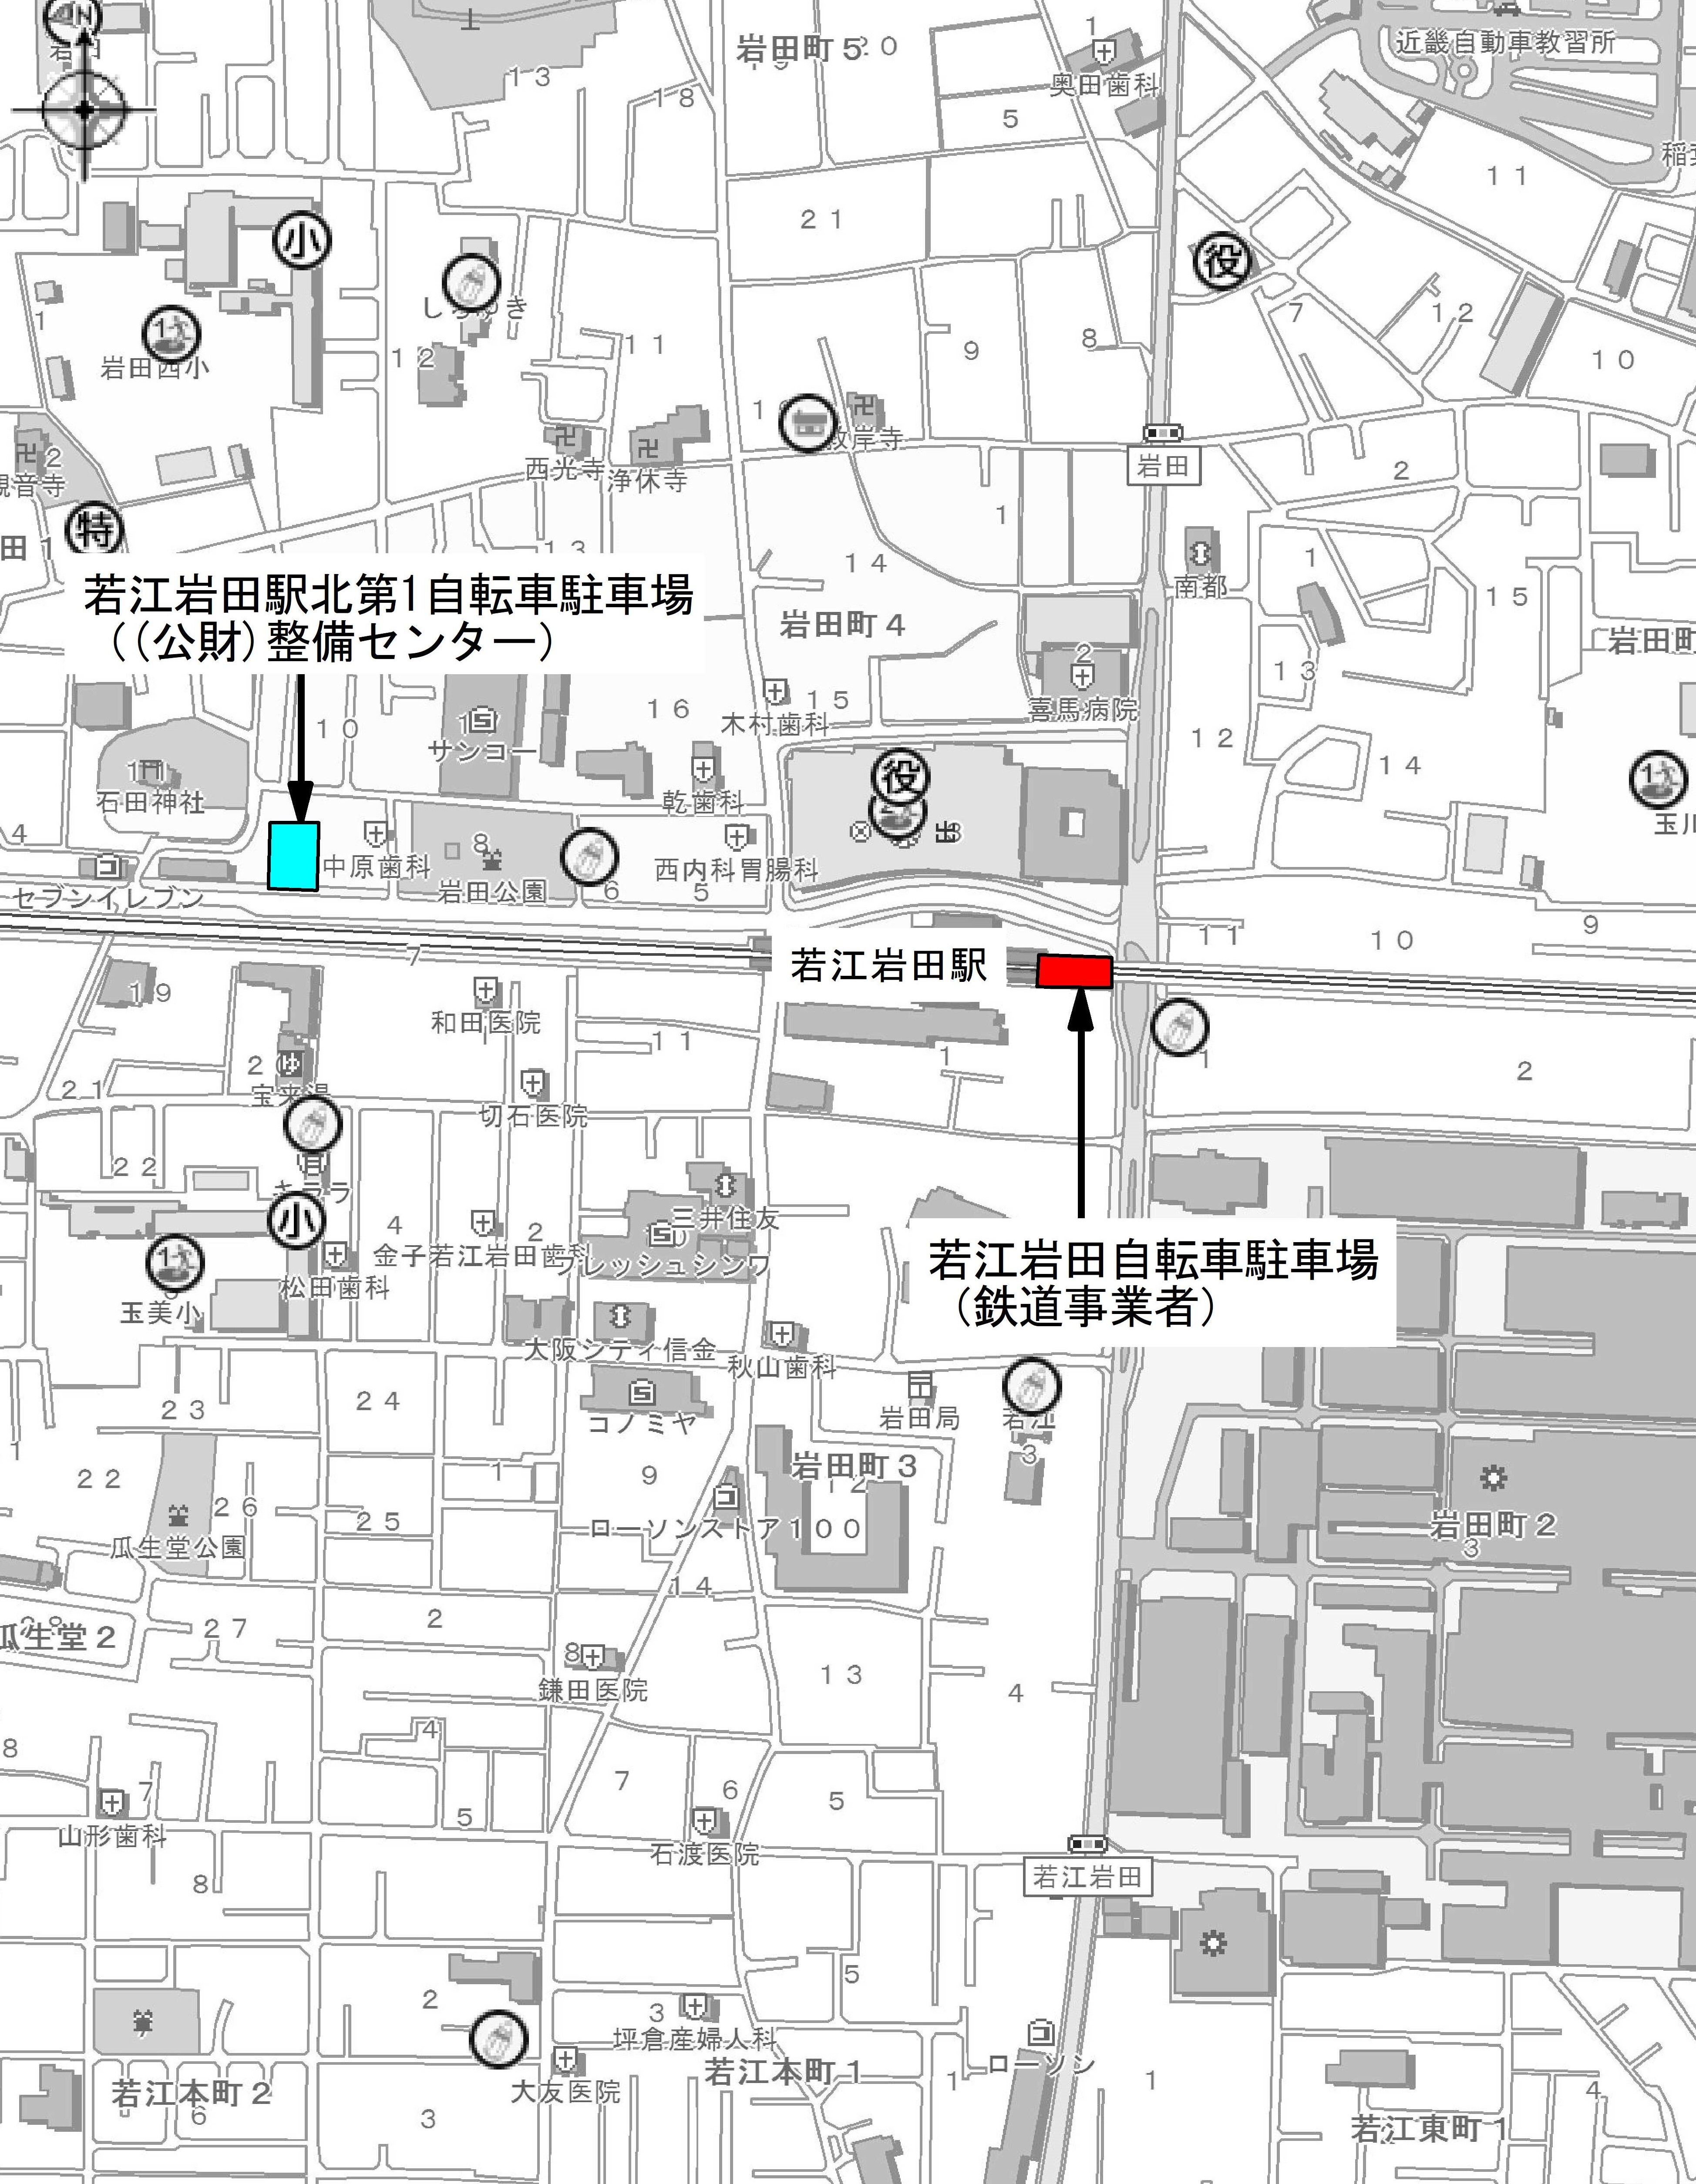 若江岩田駅周辺自転車駐車場案内図